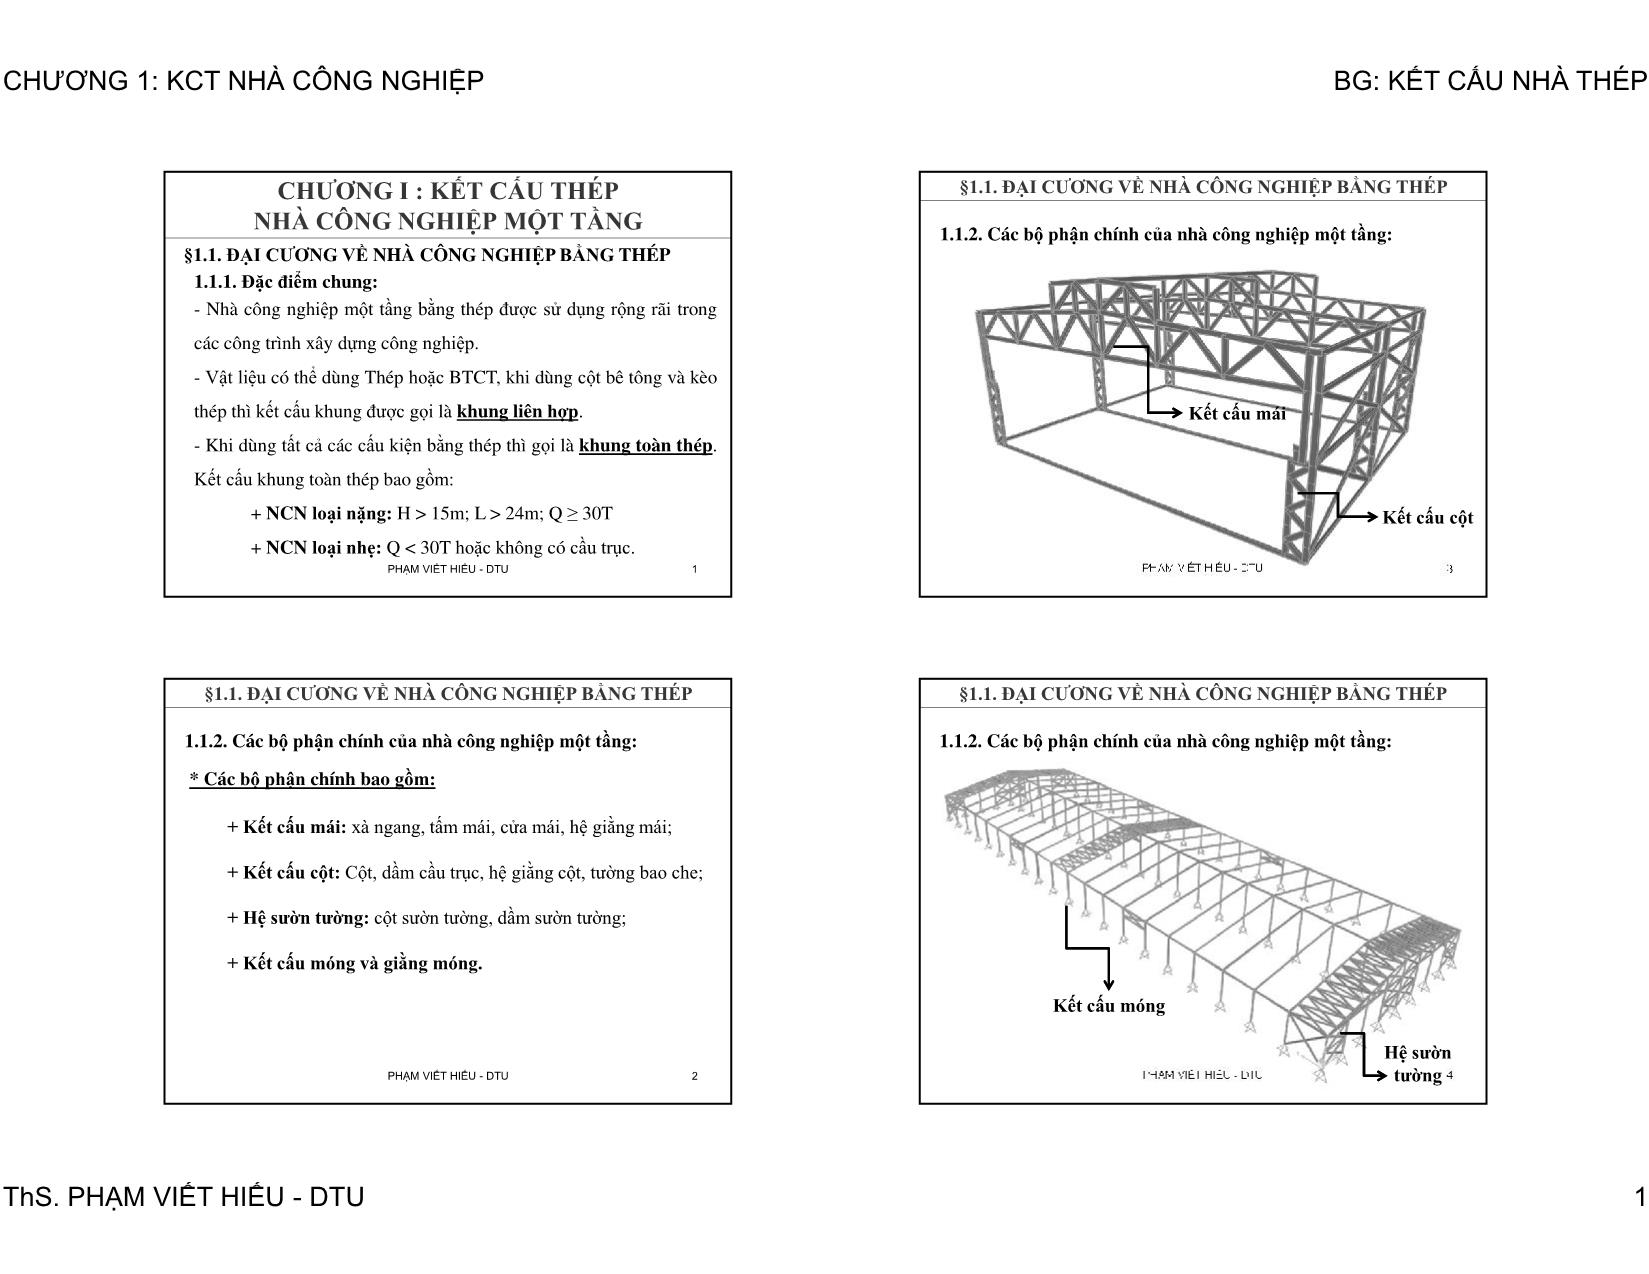 Bài giảng Kết cấu nhà thép - Chương 1: Kết cấu thép nhà công nghiệp một tầng trang 1